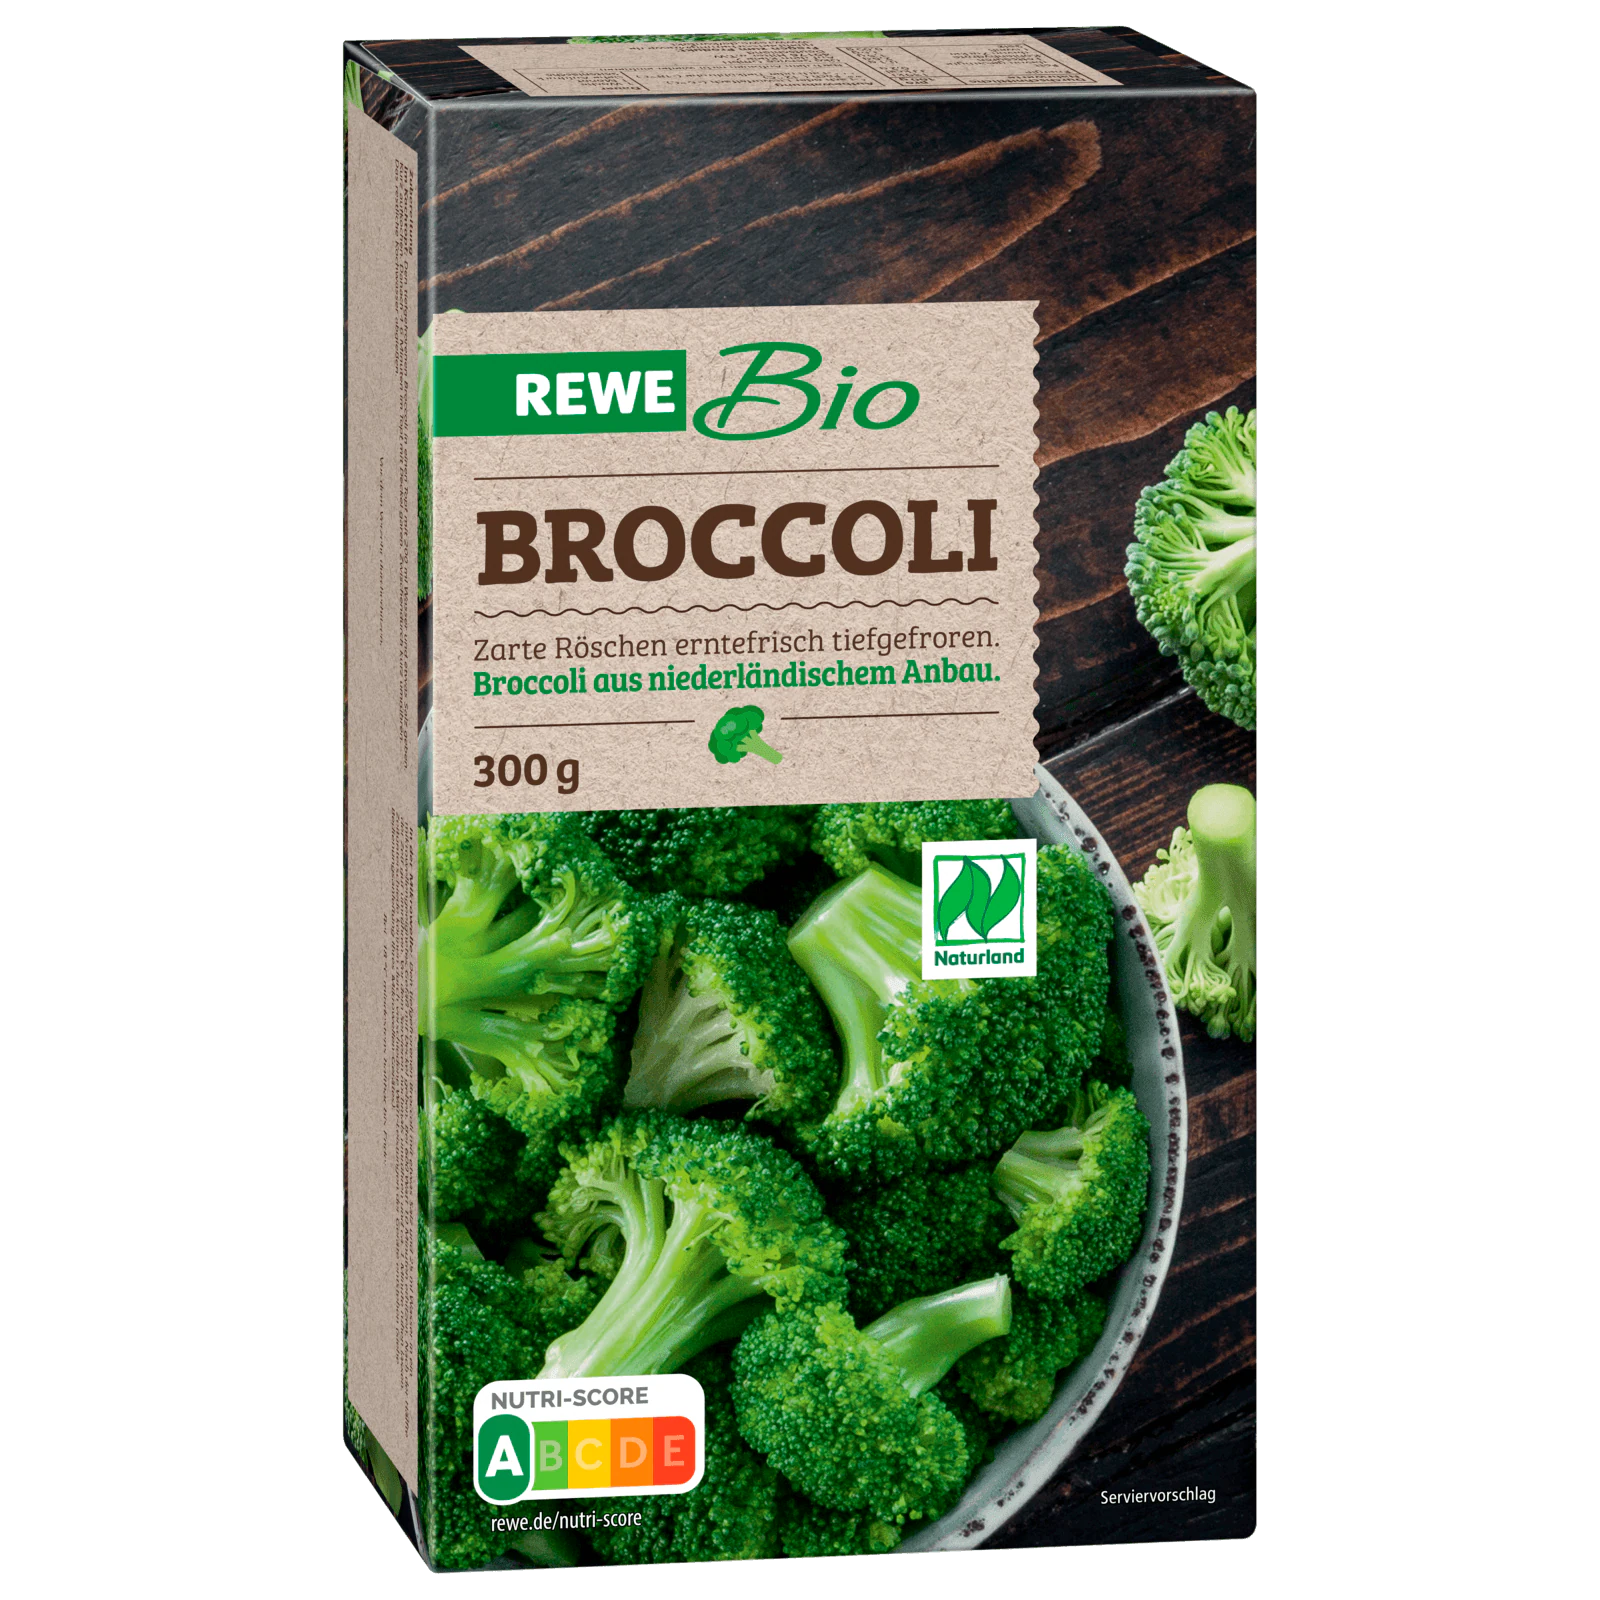 REWE Bio Broccoli tiefgefroren bestellen! bei 300g online REWE